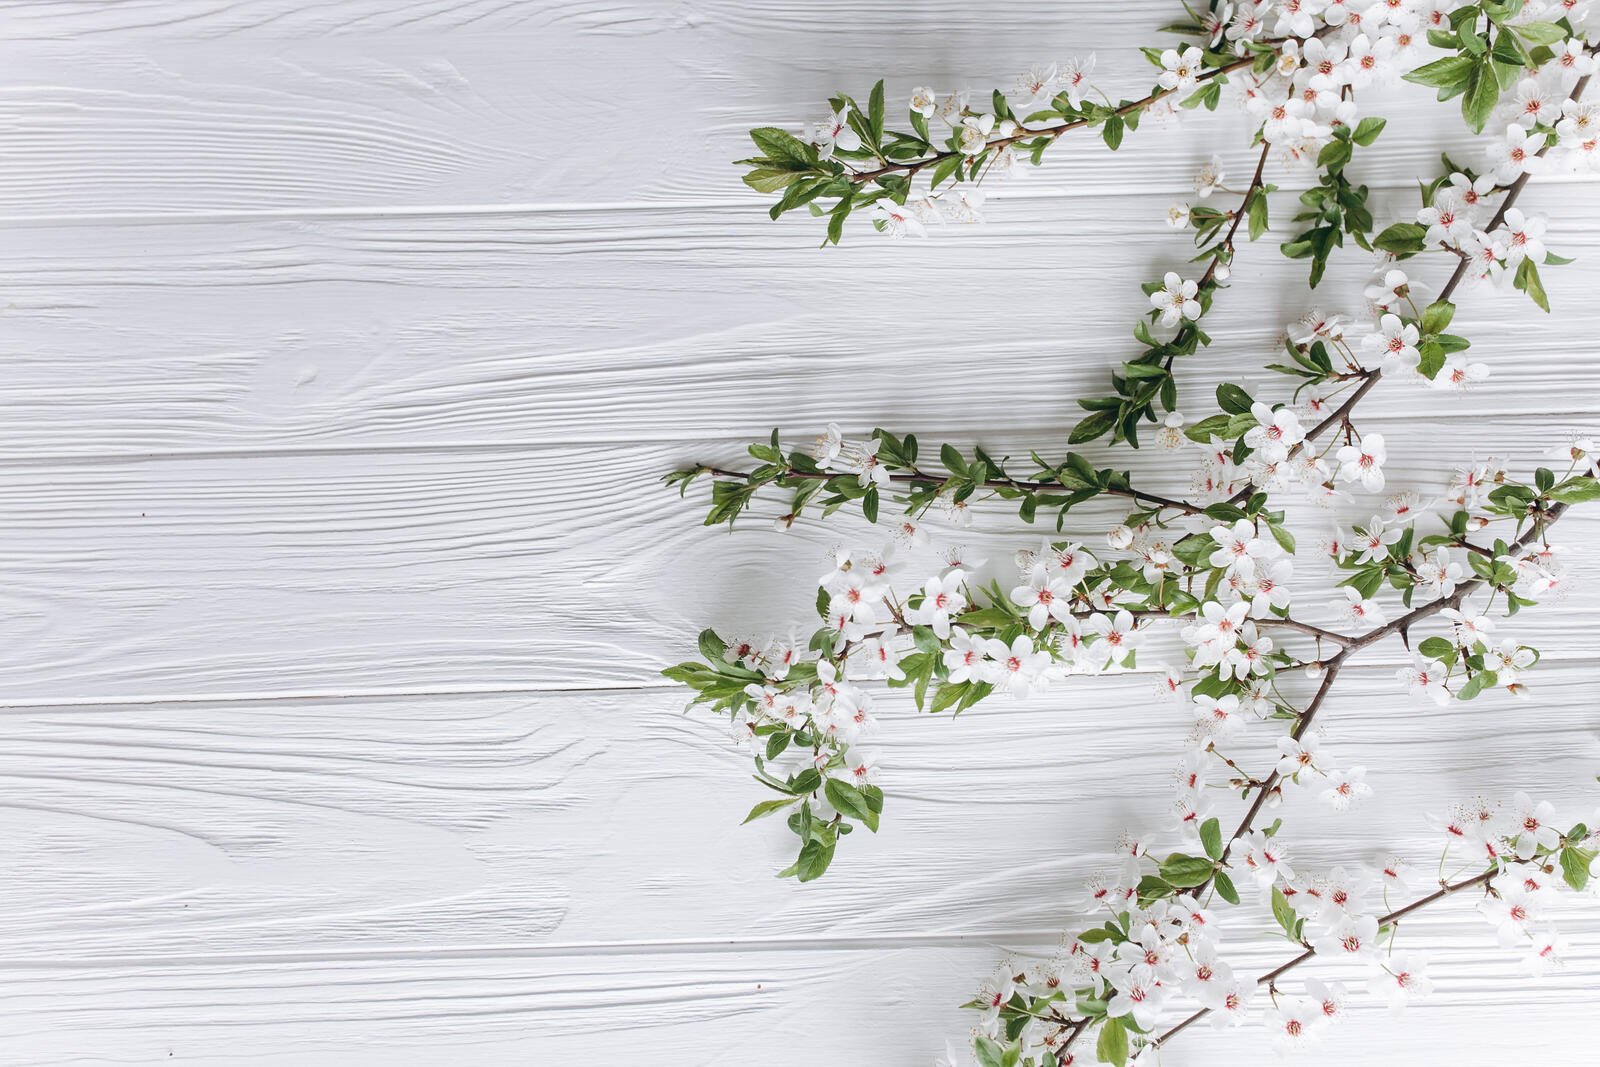 Бесплатное фото Веточка с белыми цветами на фоне белых досок